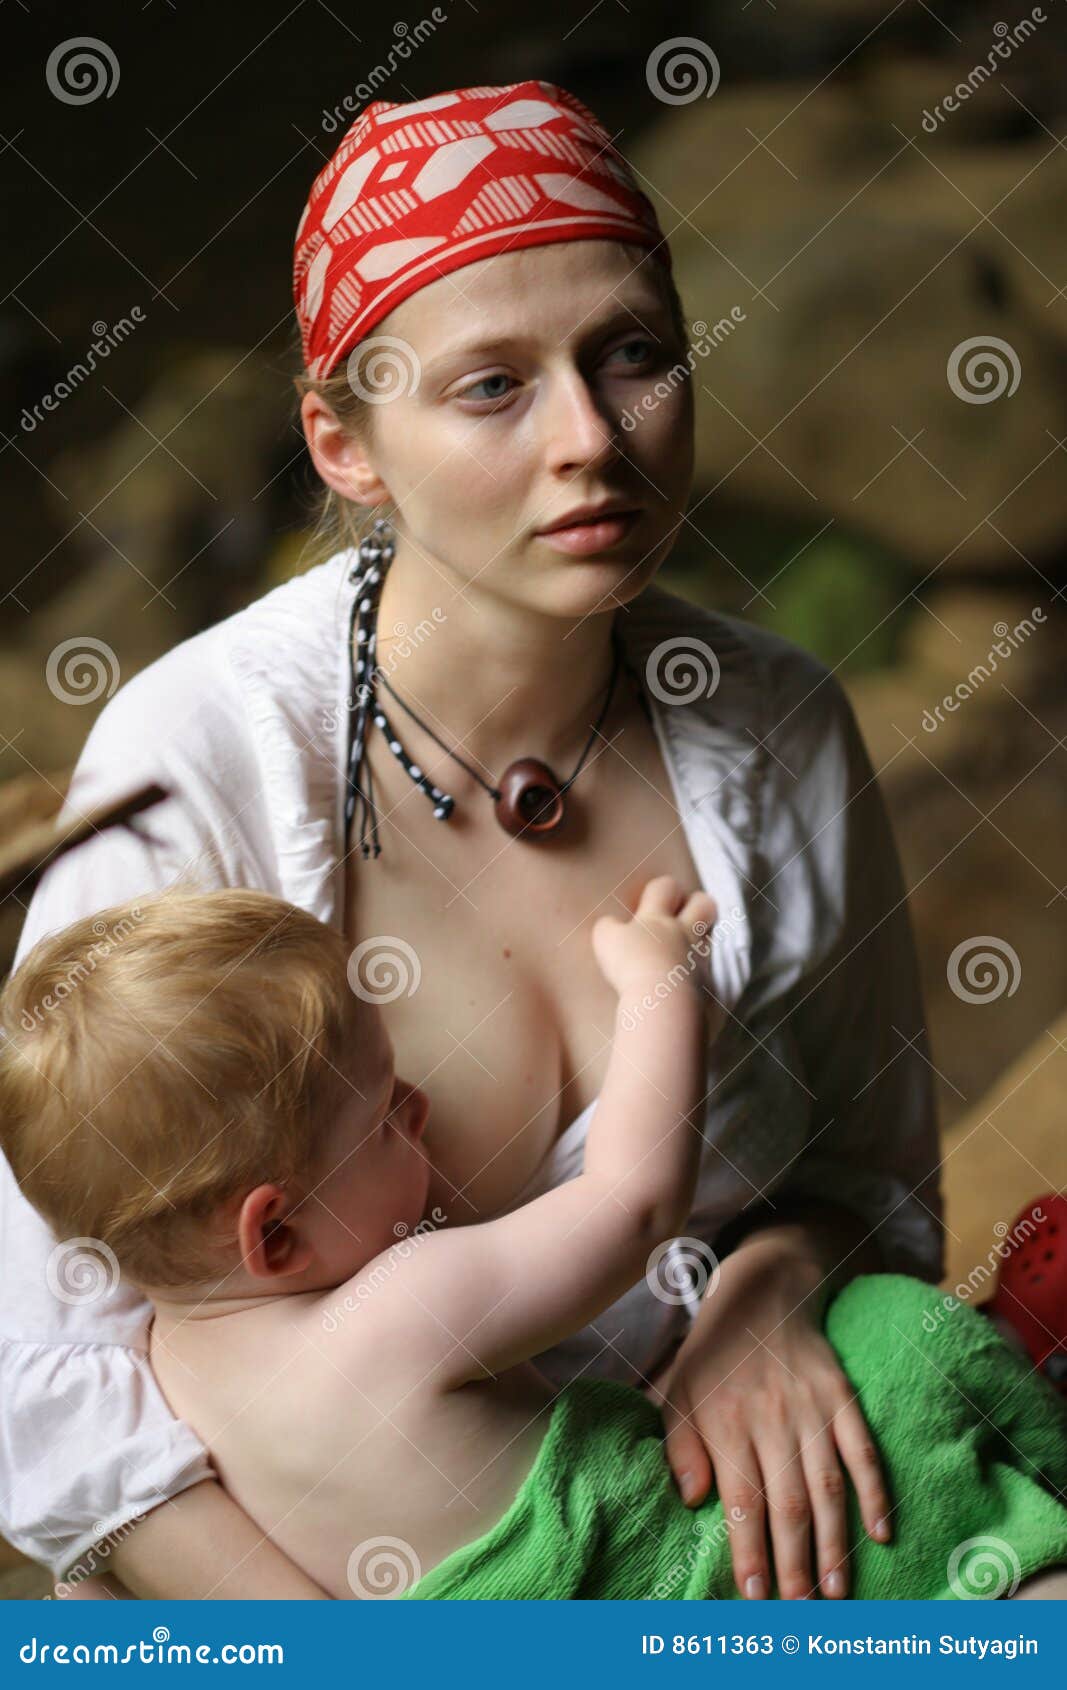 Смотреть бесплатно мама показала сыну огромную грудь